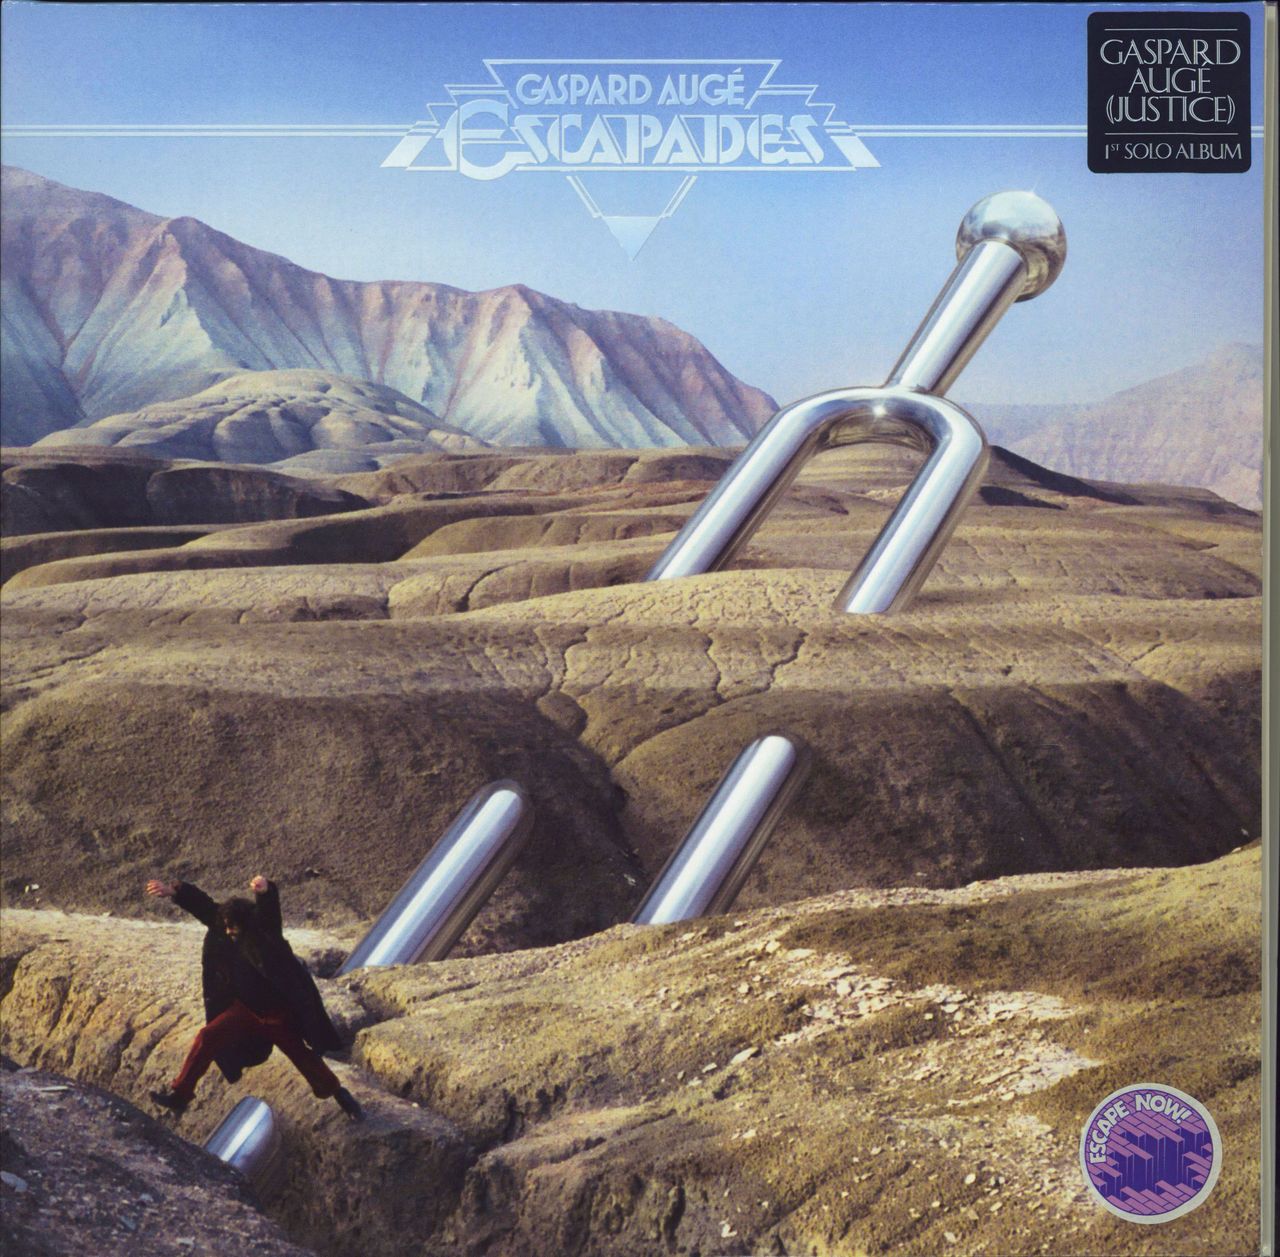 Gaspard Auge Escapades French vinyl LP album (LP record) EDLP2021-2